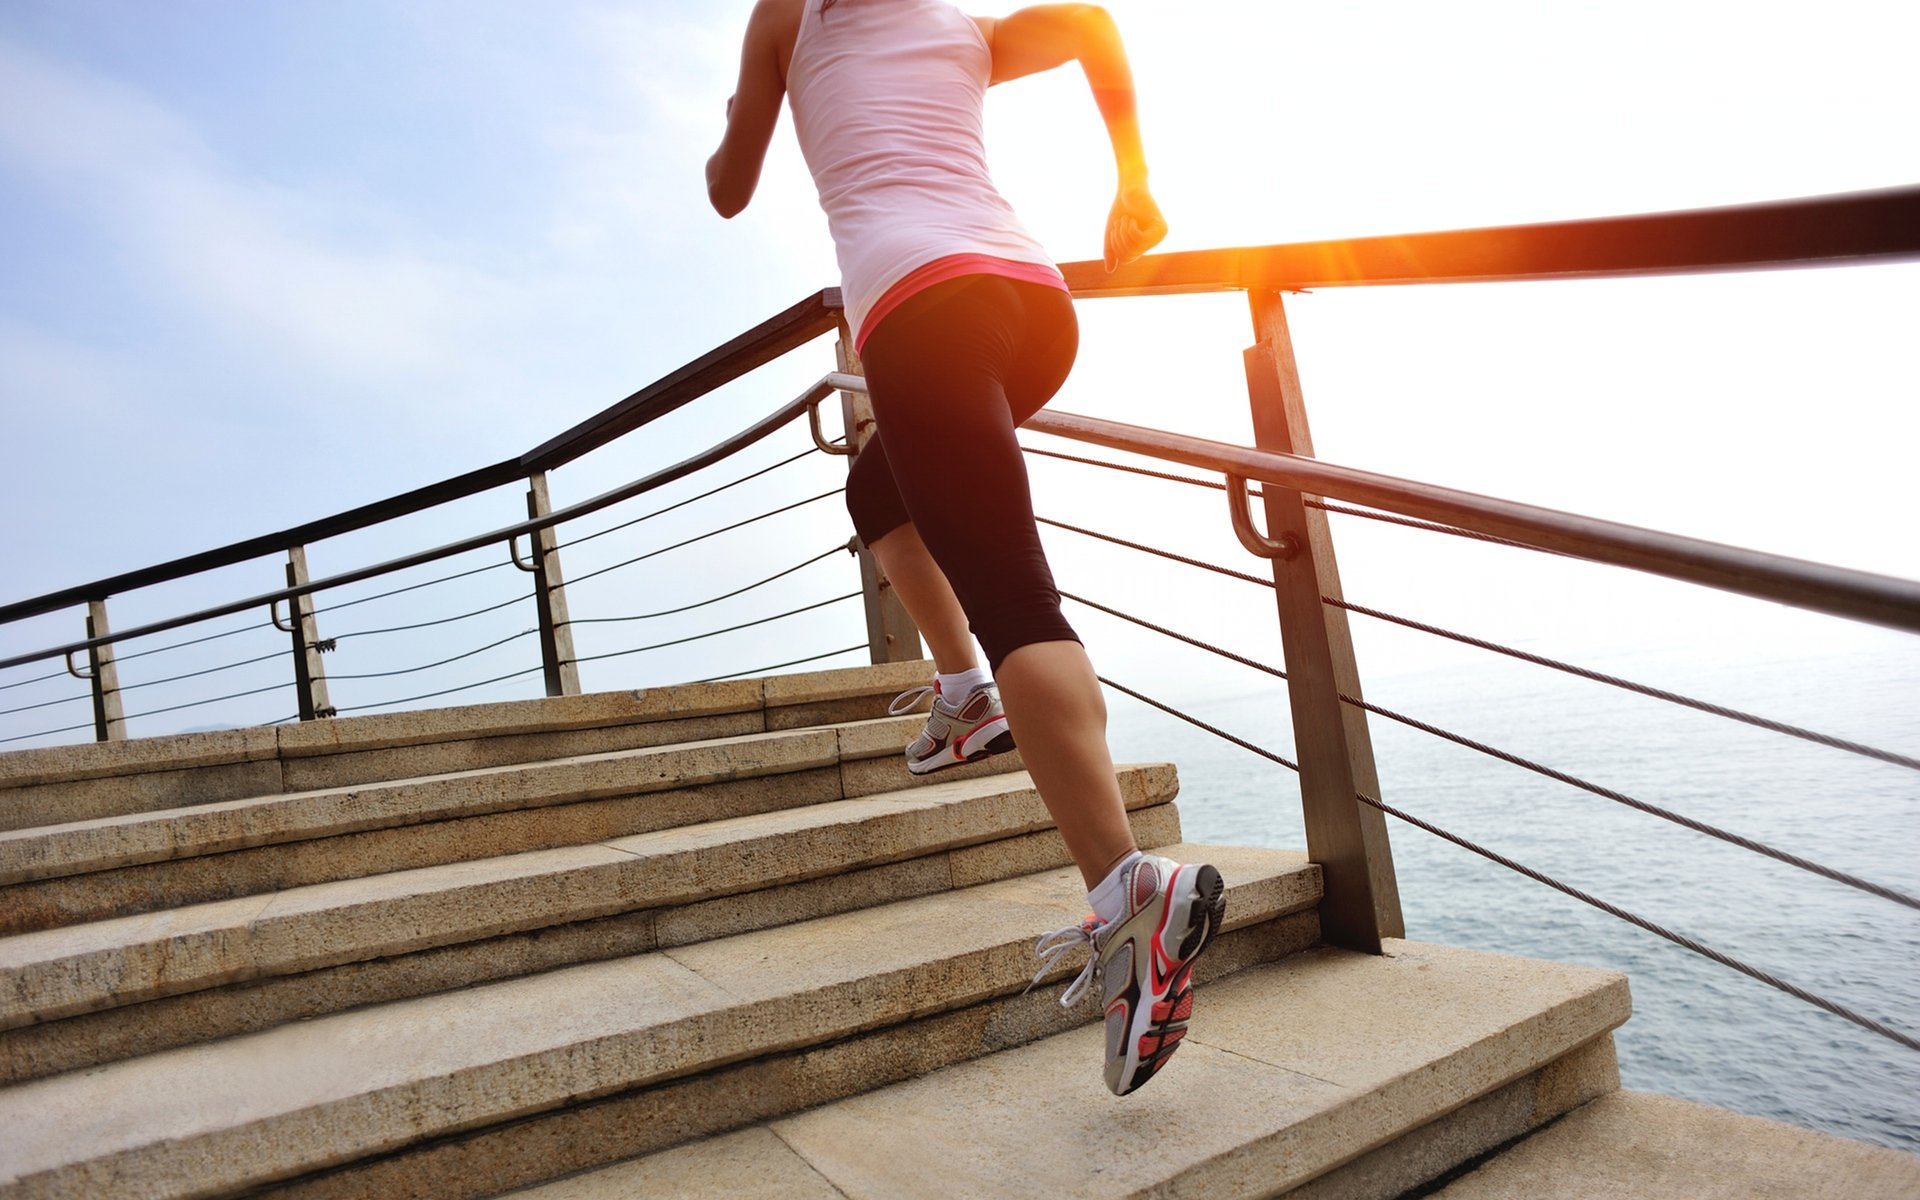 Ходьба по лестнице для похудения: отзывы и результаты о подъеме, упражнения и тренировки, а также все о беге в подъезде по ступенькам